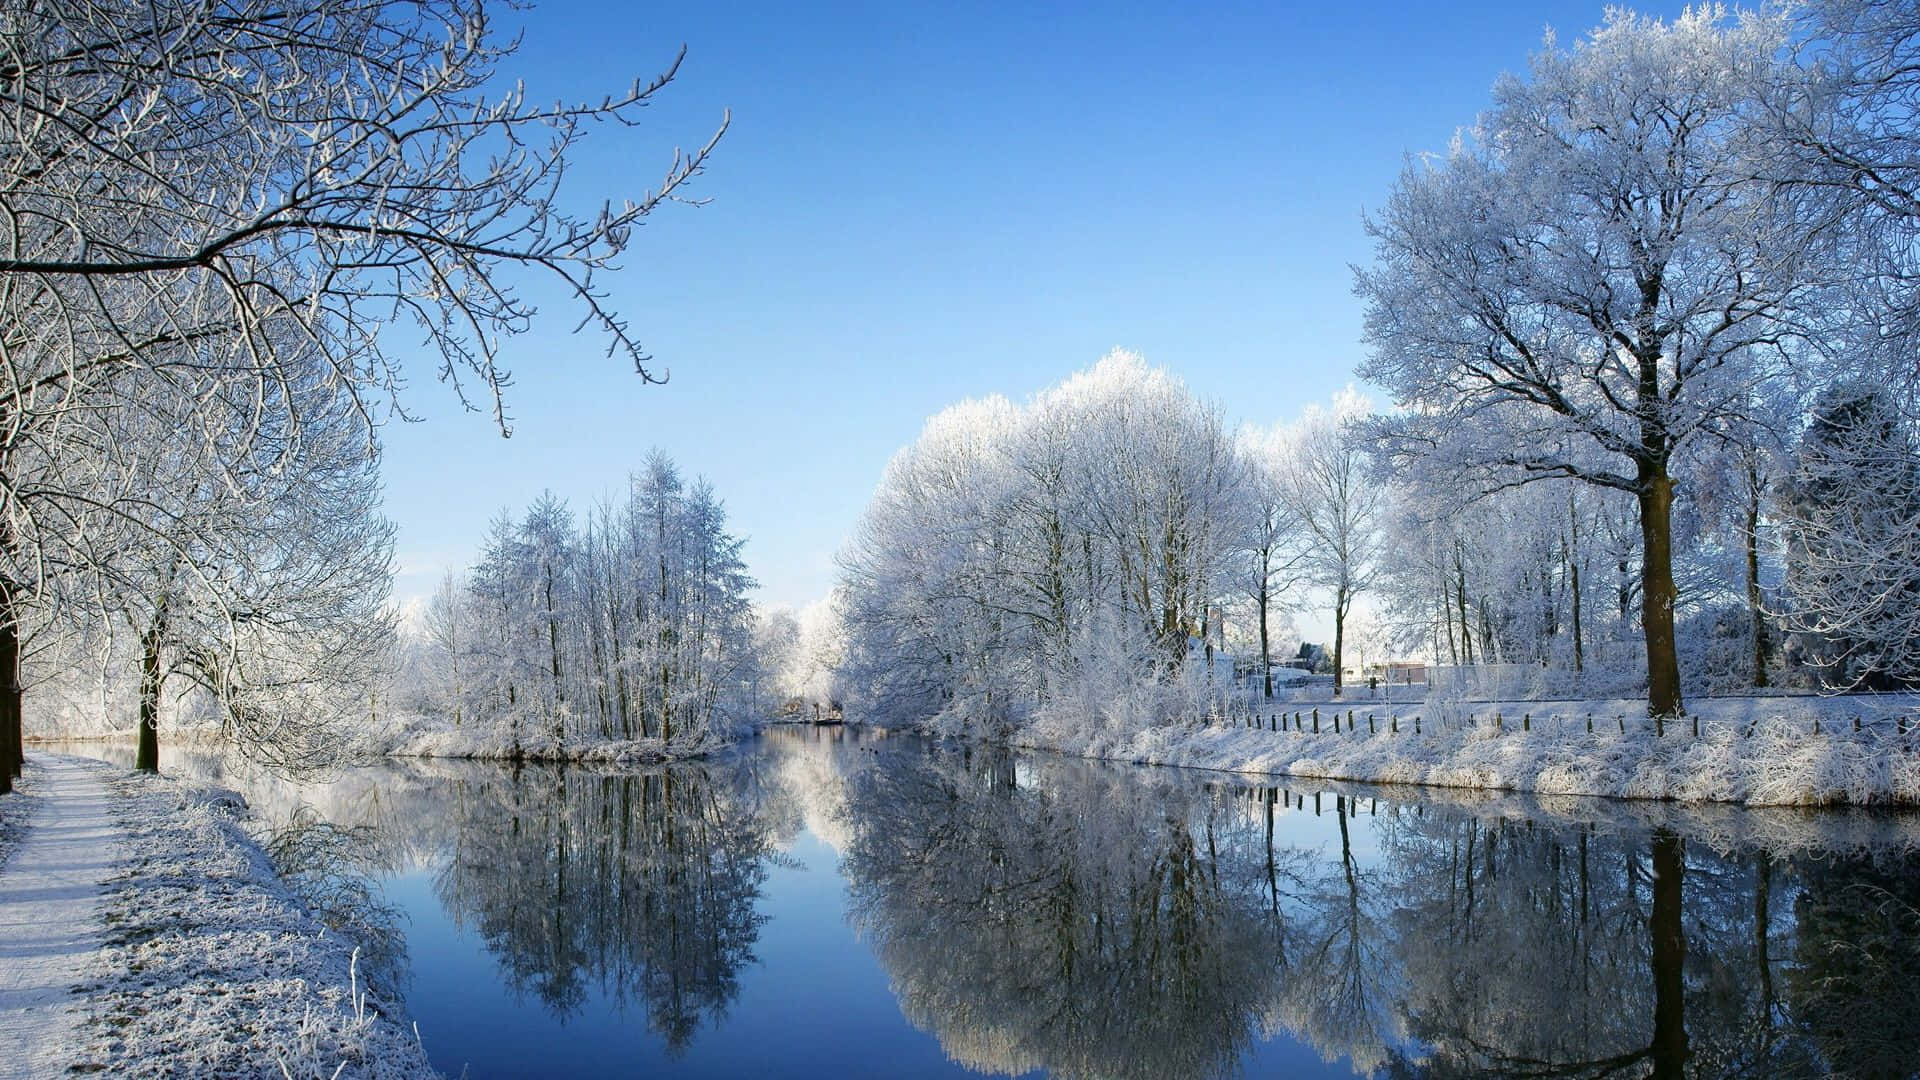 A Peaceful Winter Scene